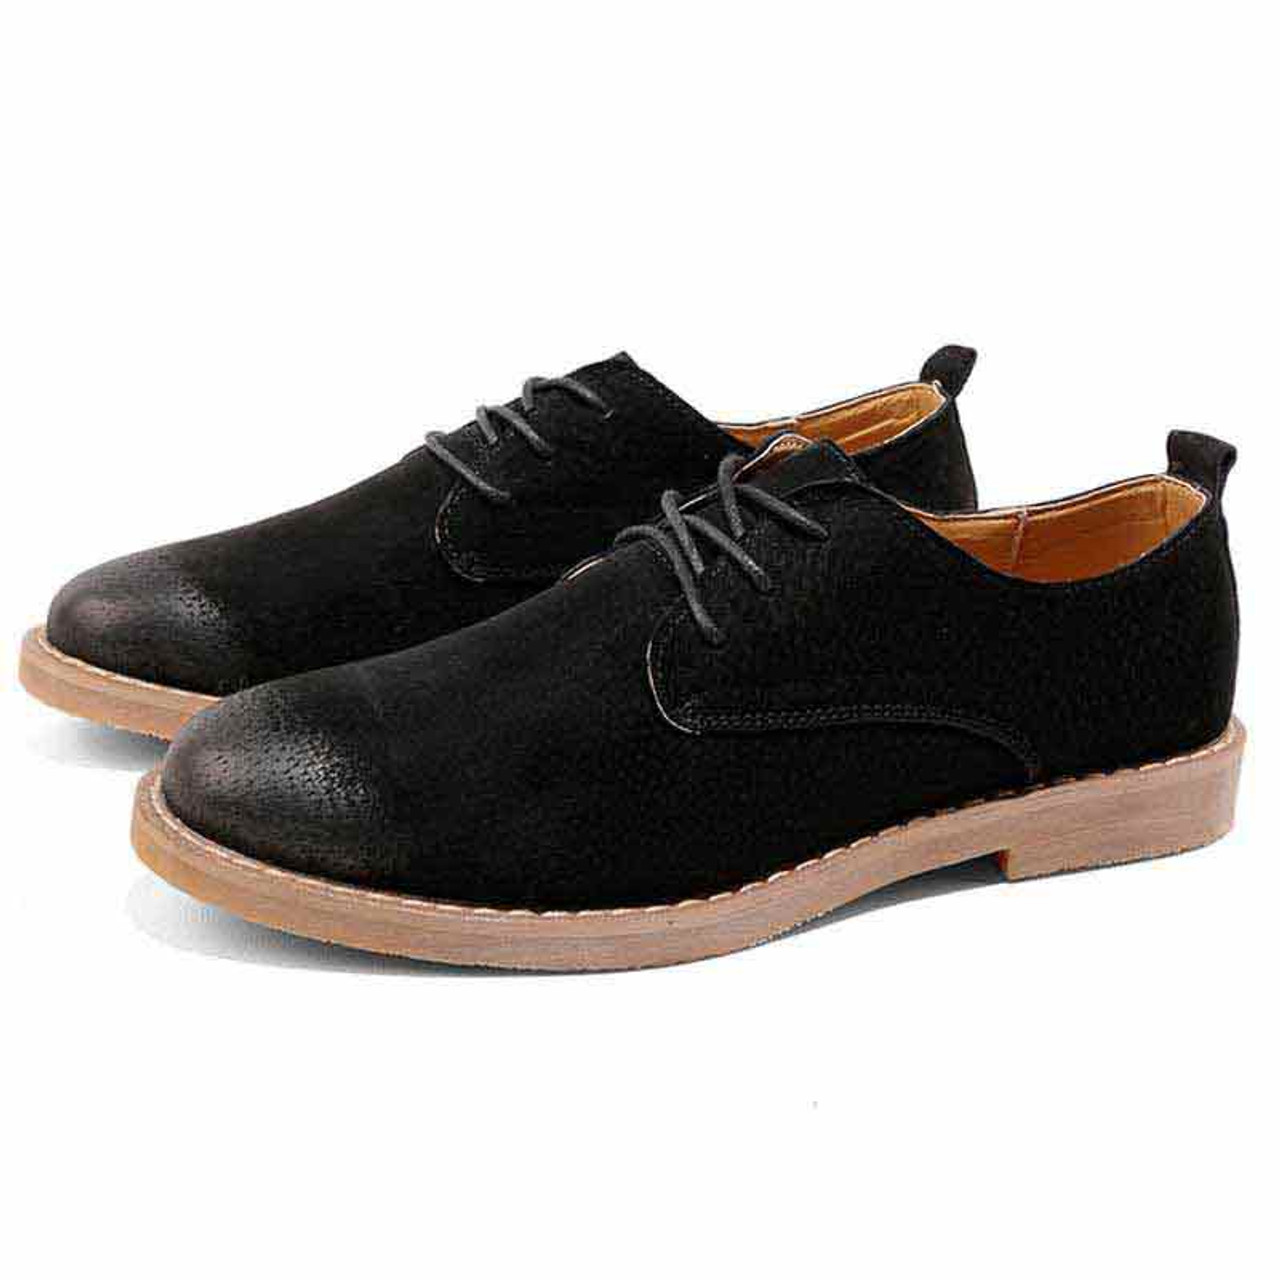 Black retro leather derby dress shoe | Mens dress shoes online 1479MS